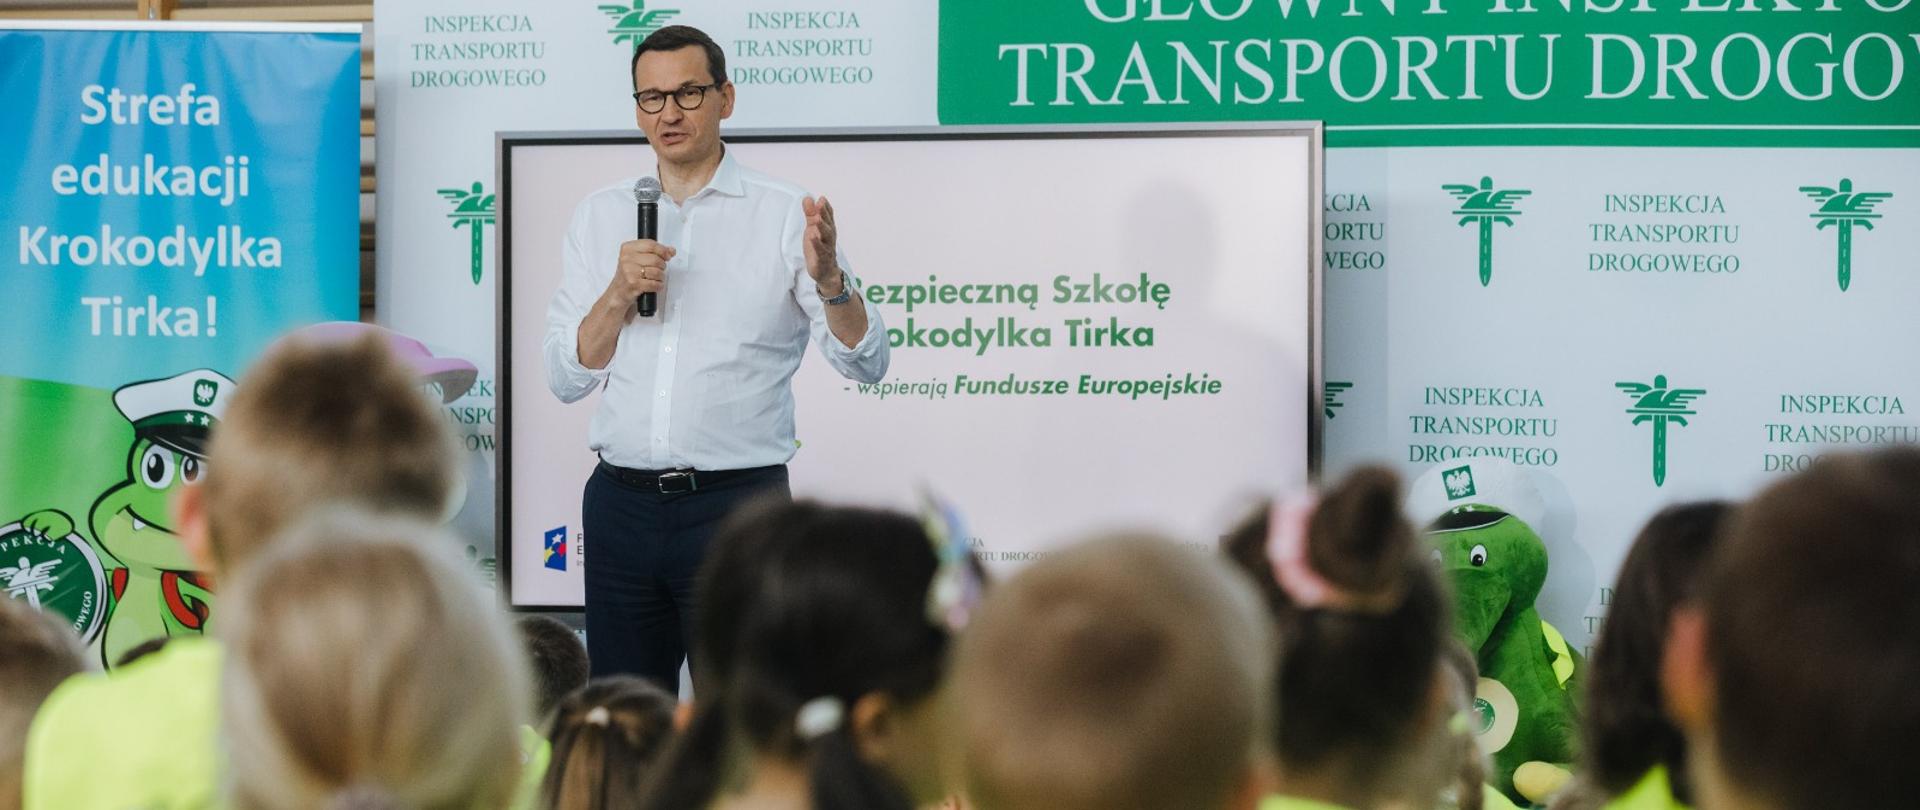 Premier Mateusz Morawiecki uczestniczy w lekcji z zakresu bezpieczeństwa drogowego w ramach „Bezpiecznej Szkoły Krokodylka Tirka".